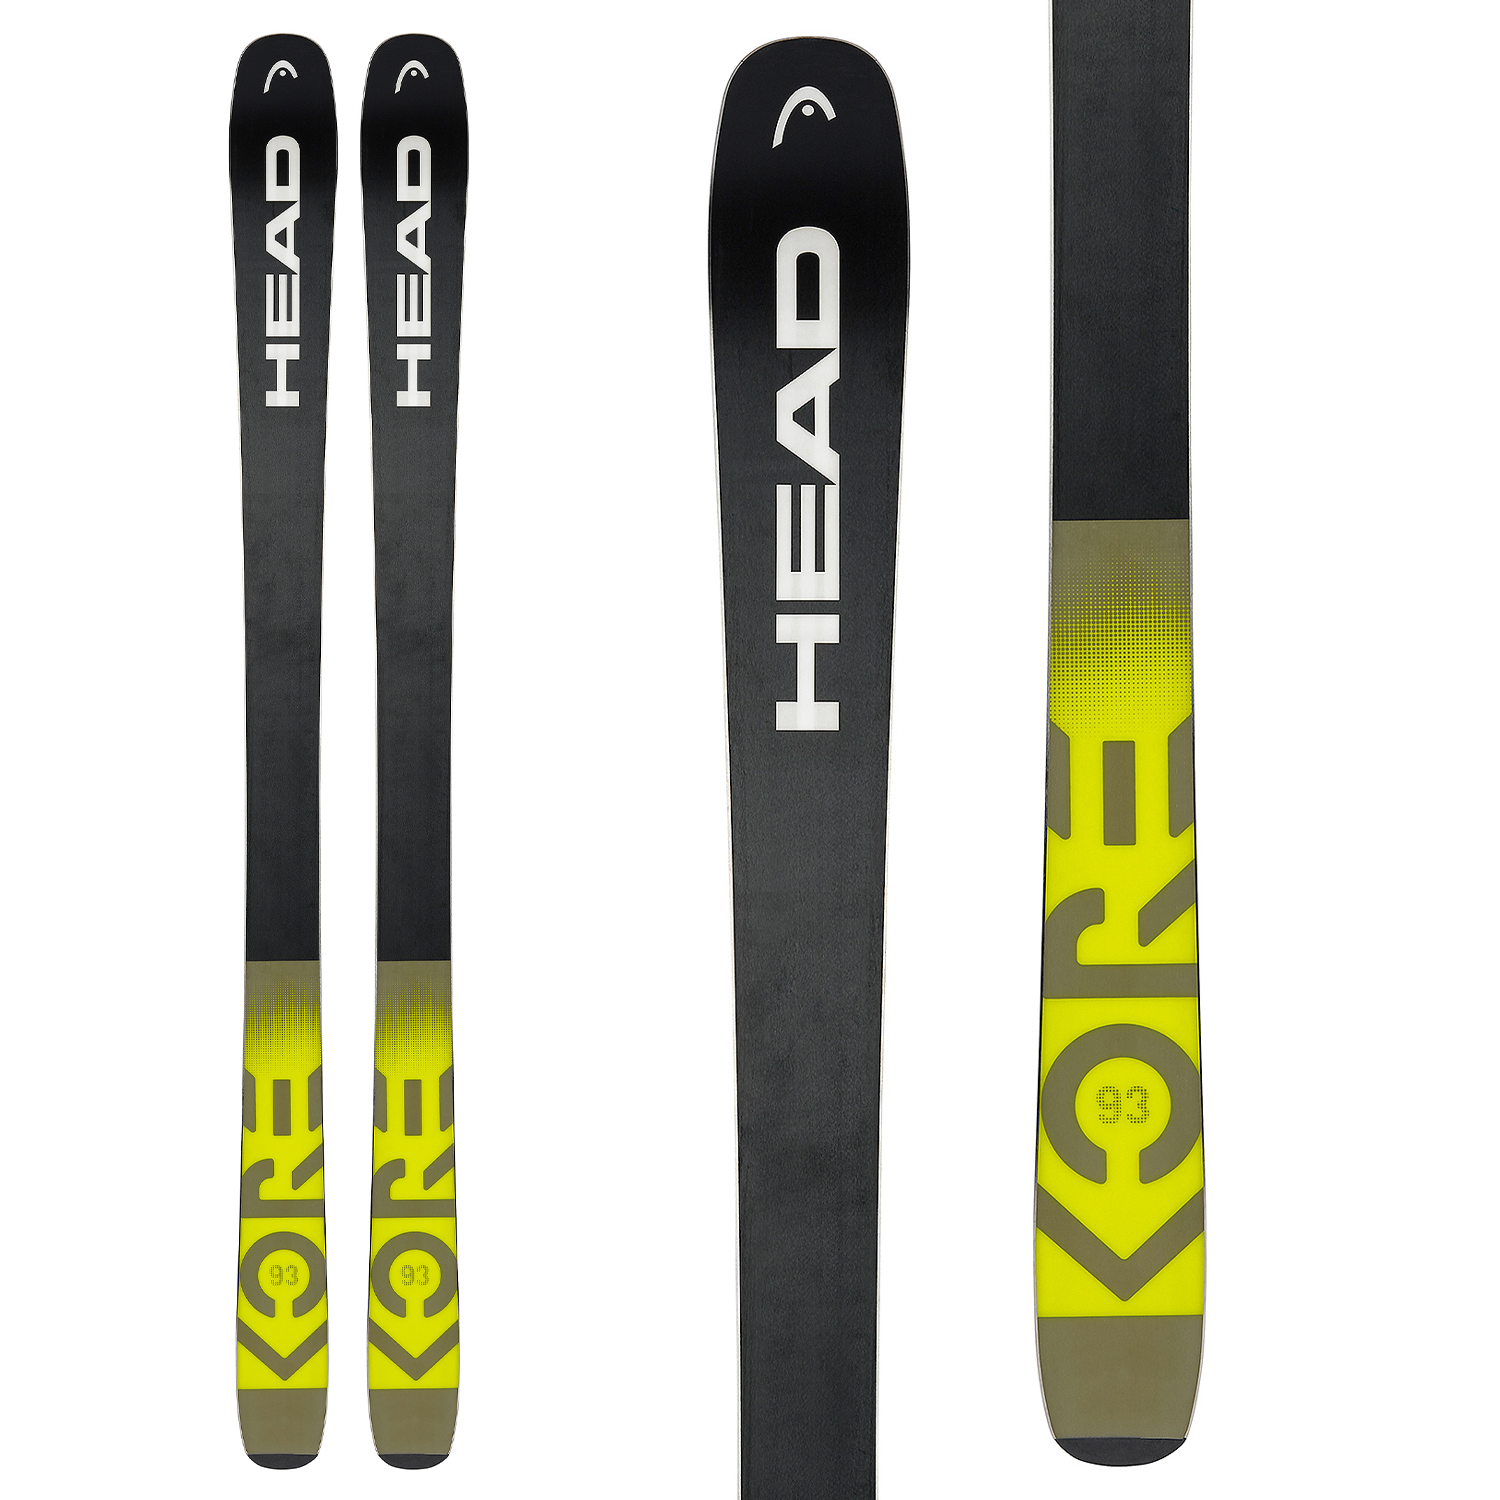 NEW 2021 Head Kore 87 Skis w/ MOUNTED Marker Griffon Bindings162 cm 